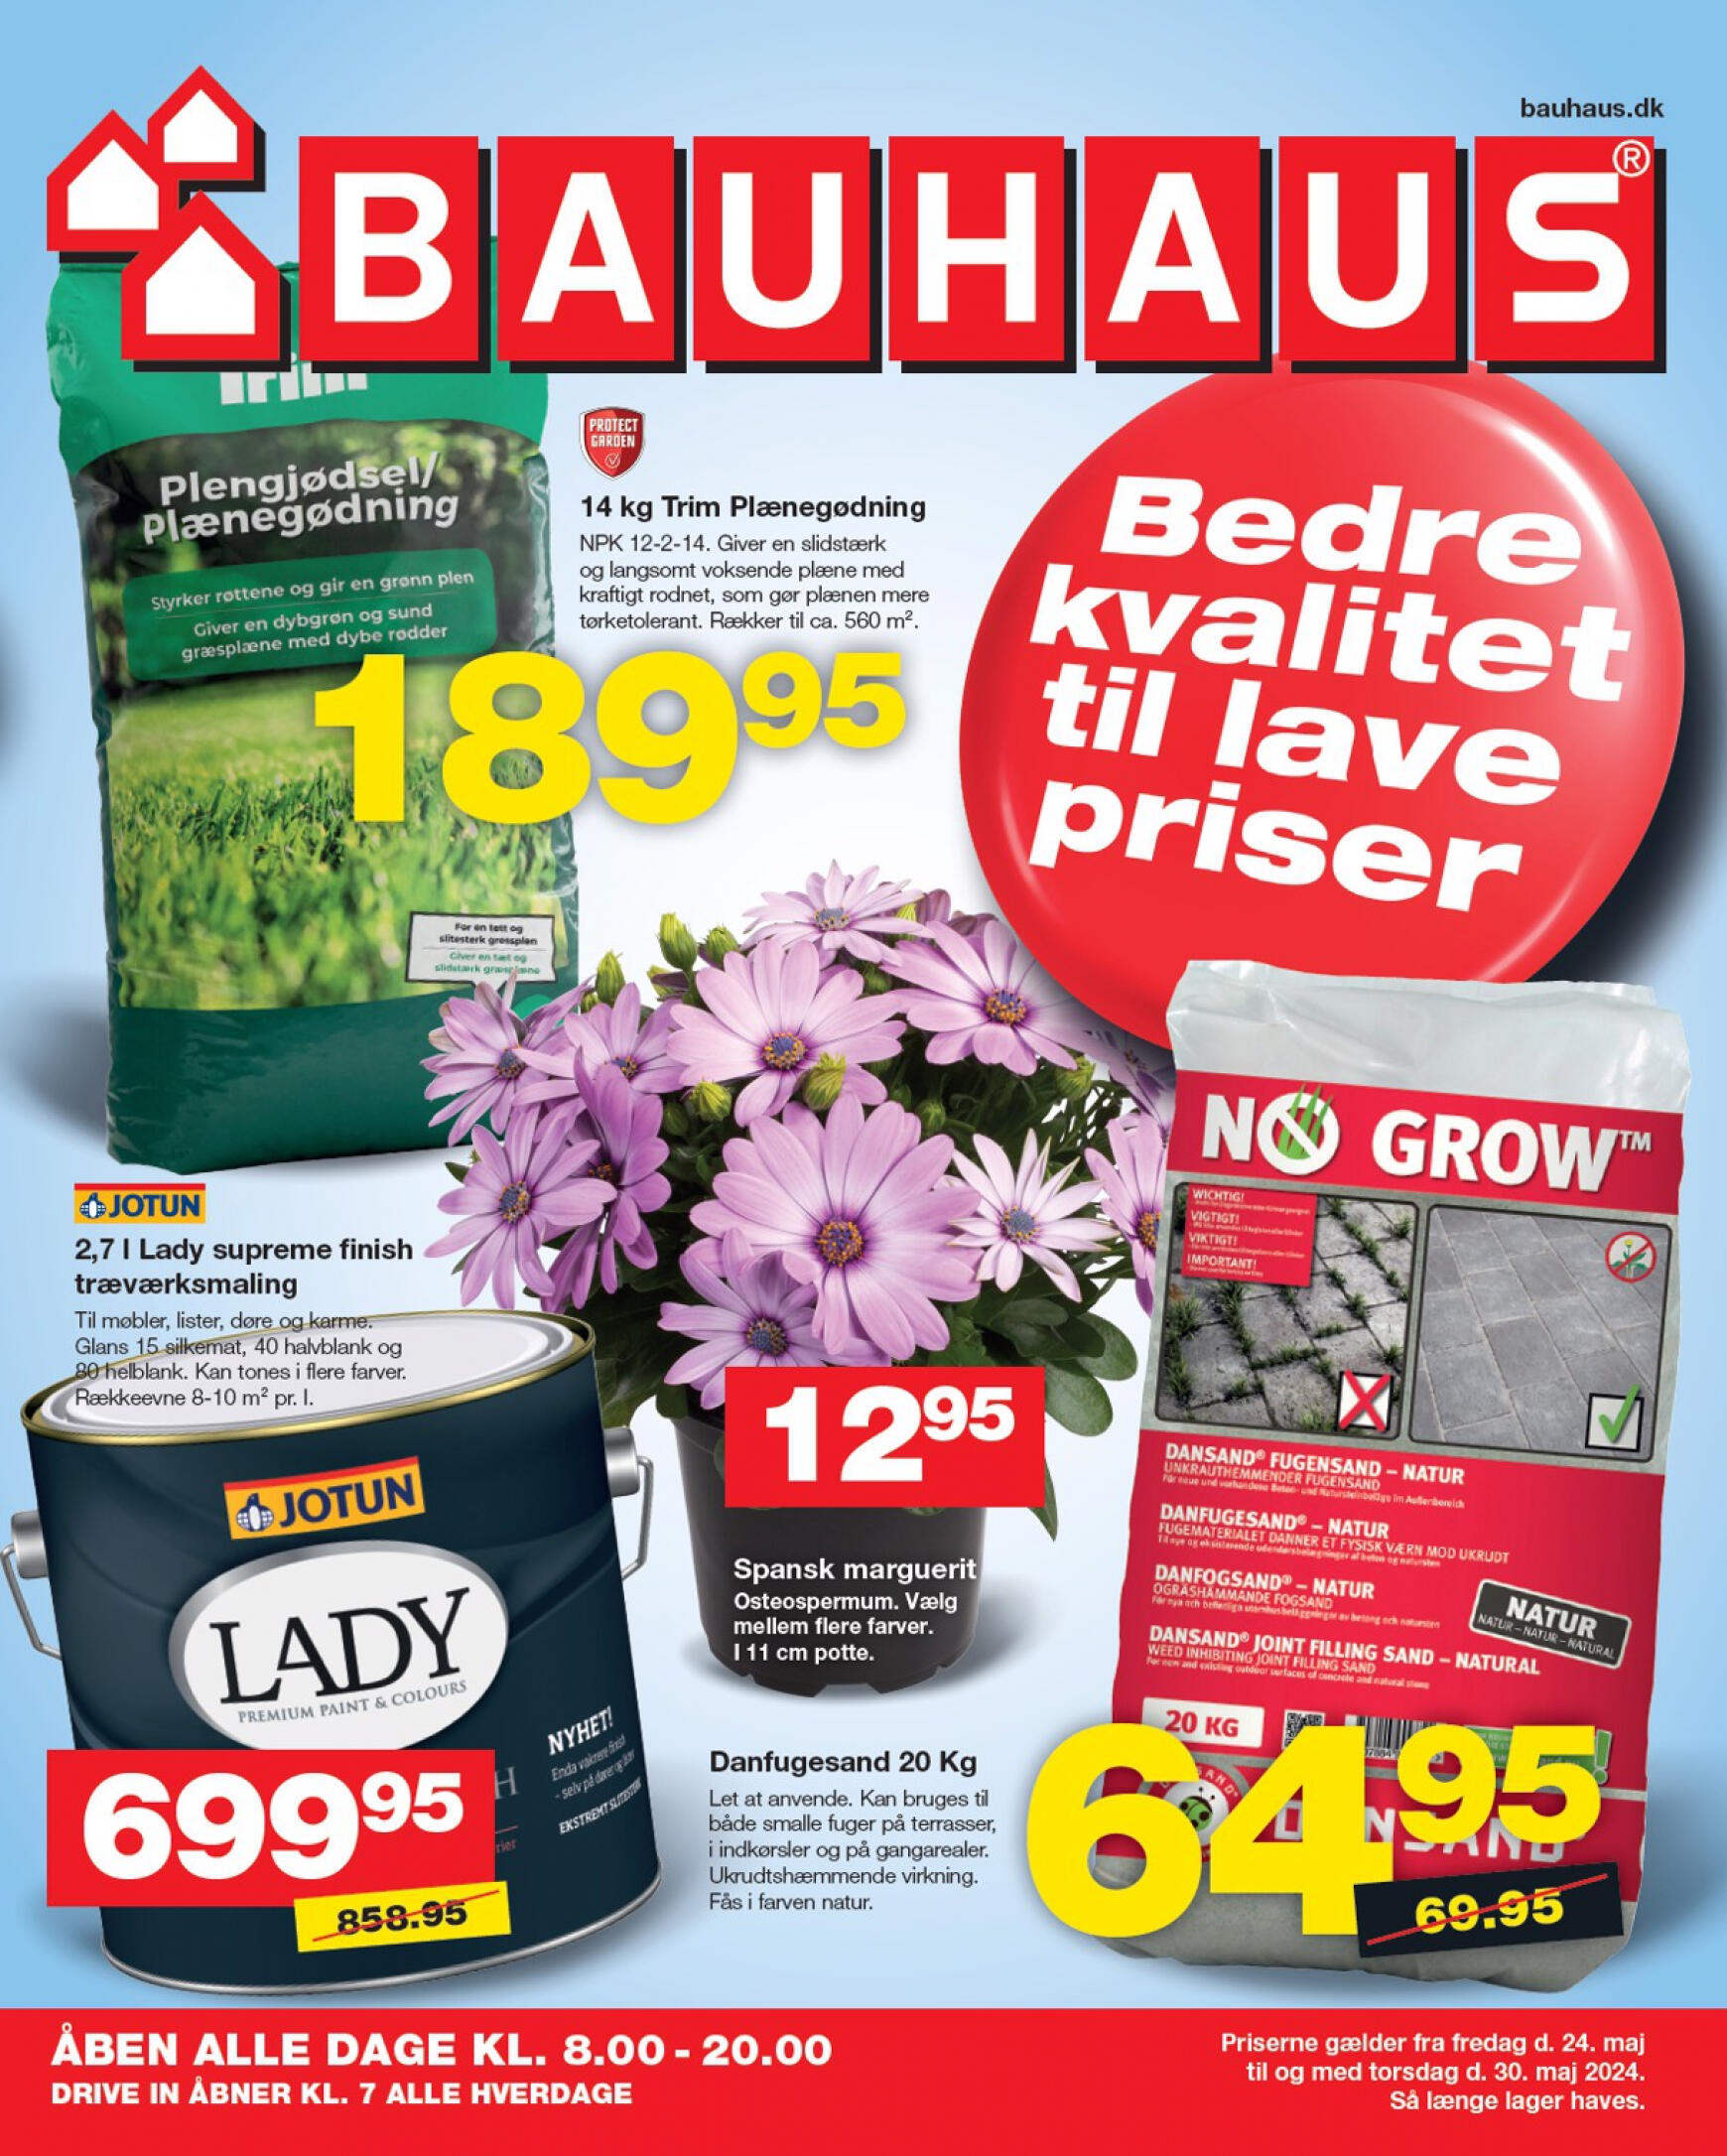 bauhaus - BAUHAUS nuværende 24.05. tilbudsavis - 30.05. - page: 1